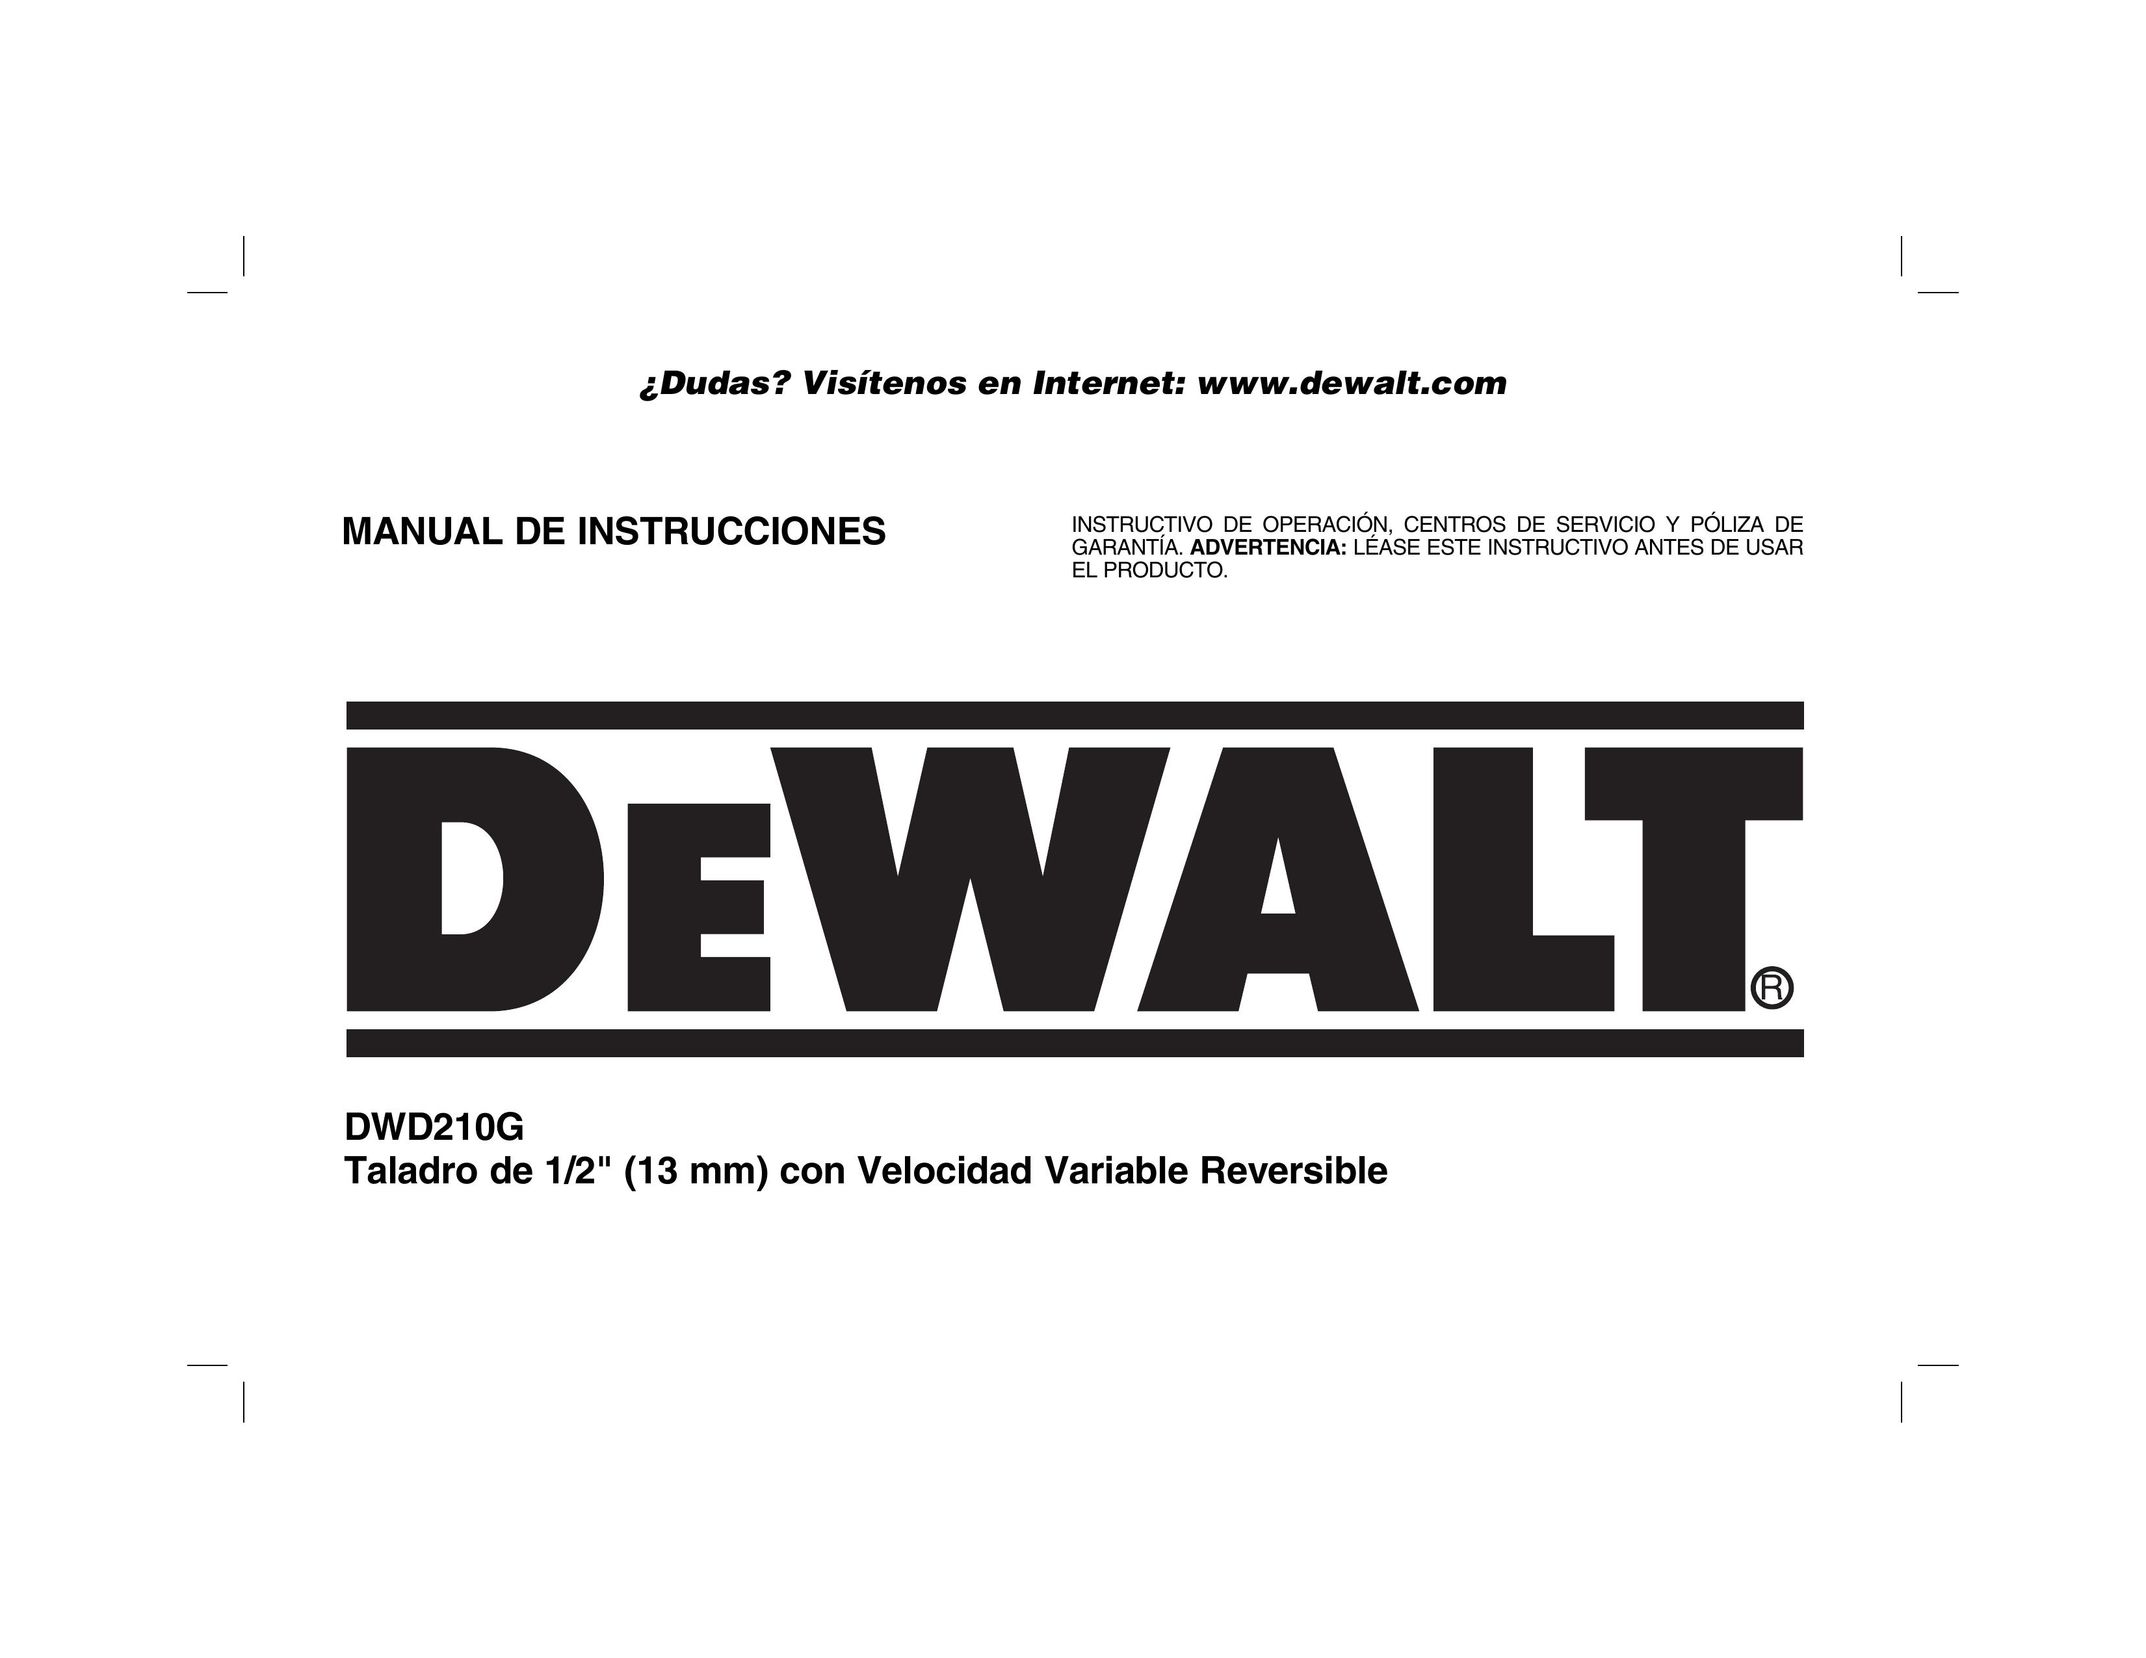 DeWalt DWD210G Cordless Drill User Manual